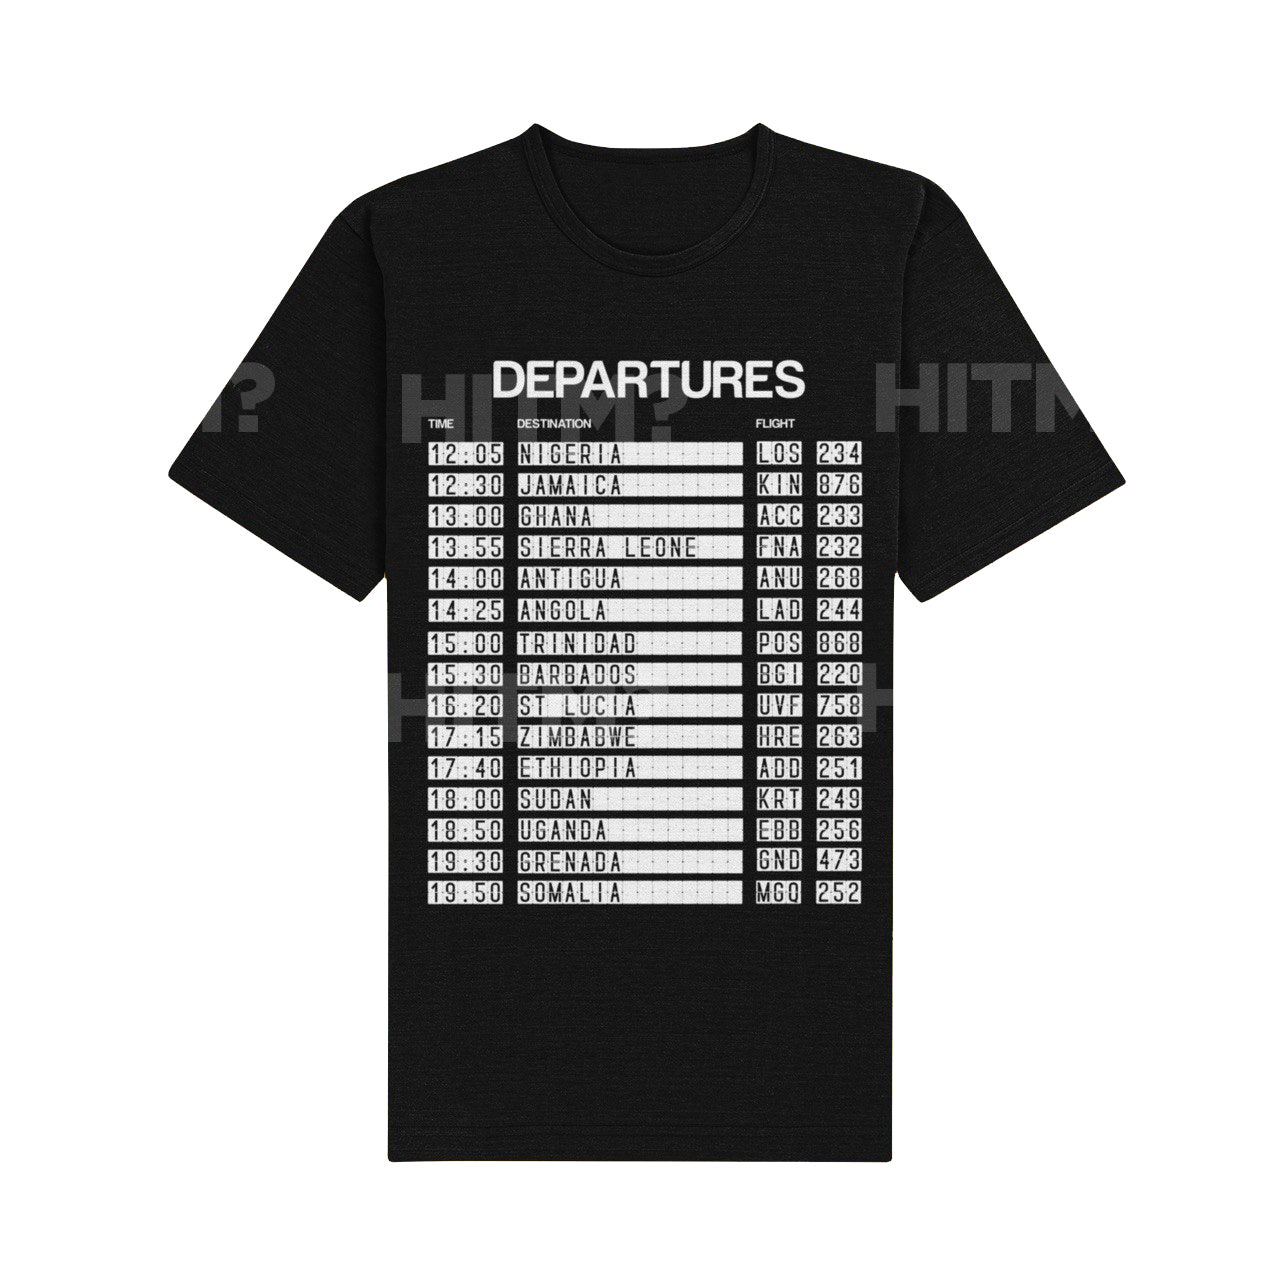 "Departures - 15 Nations" Black Organic Cotton T-Shirt - M